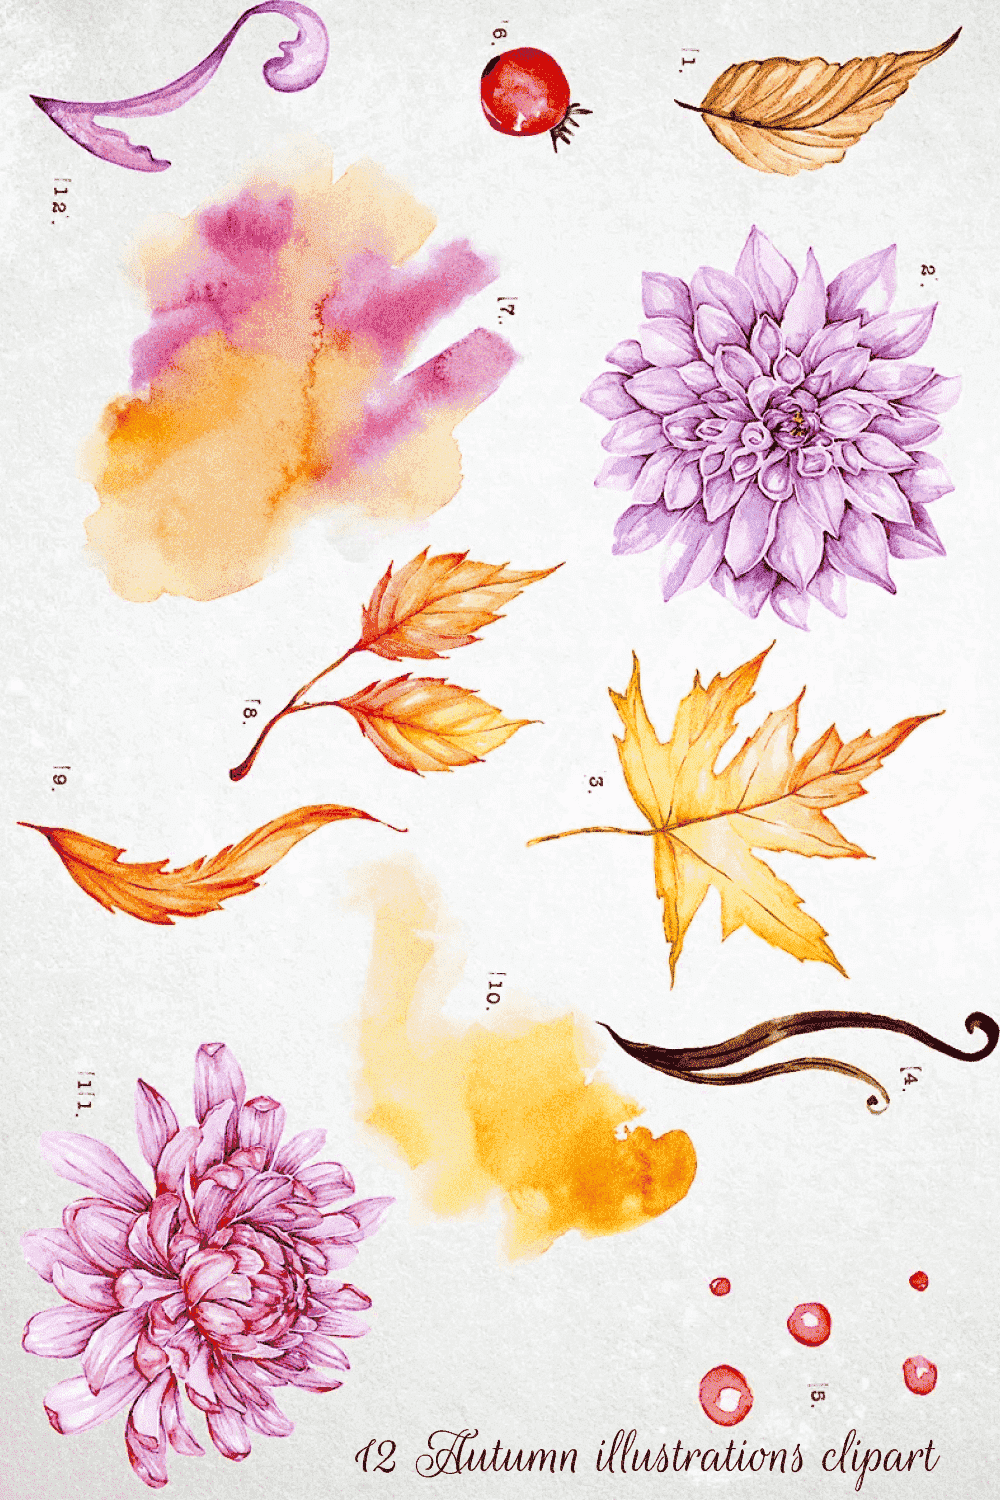 12 Autumn Illustrations Clipart - Pinterest Image.